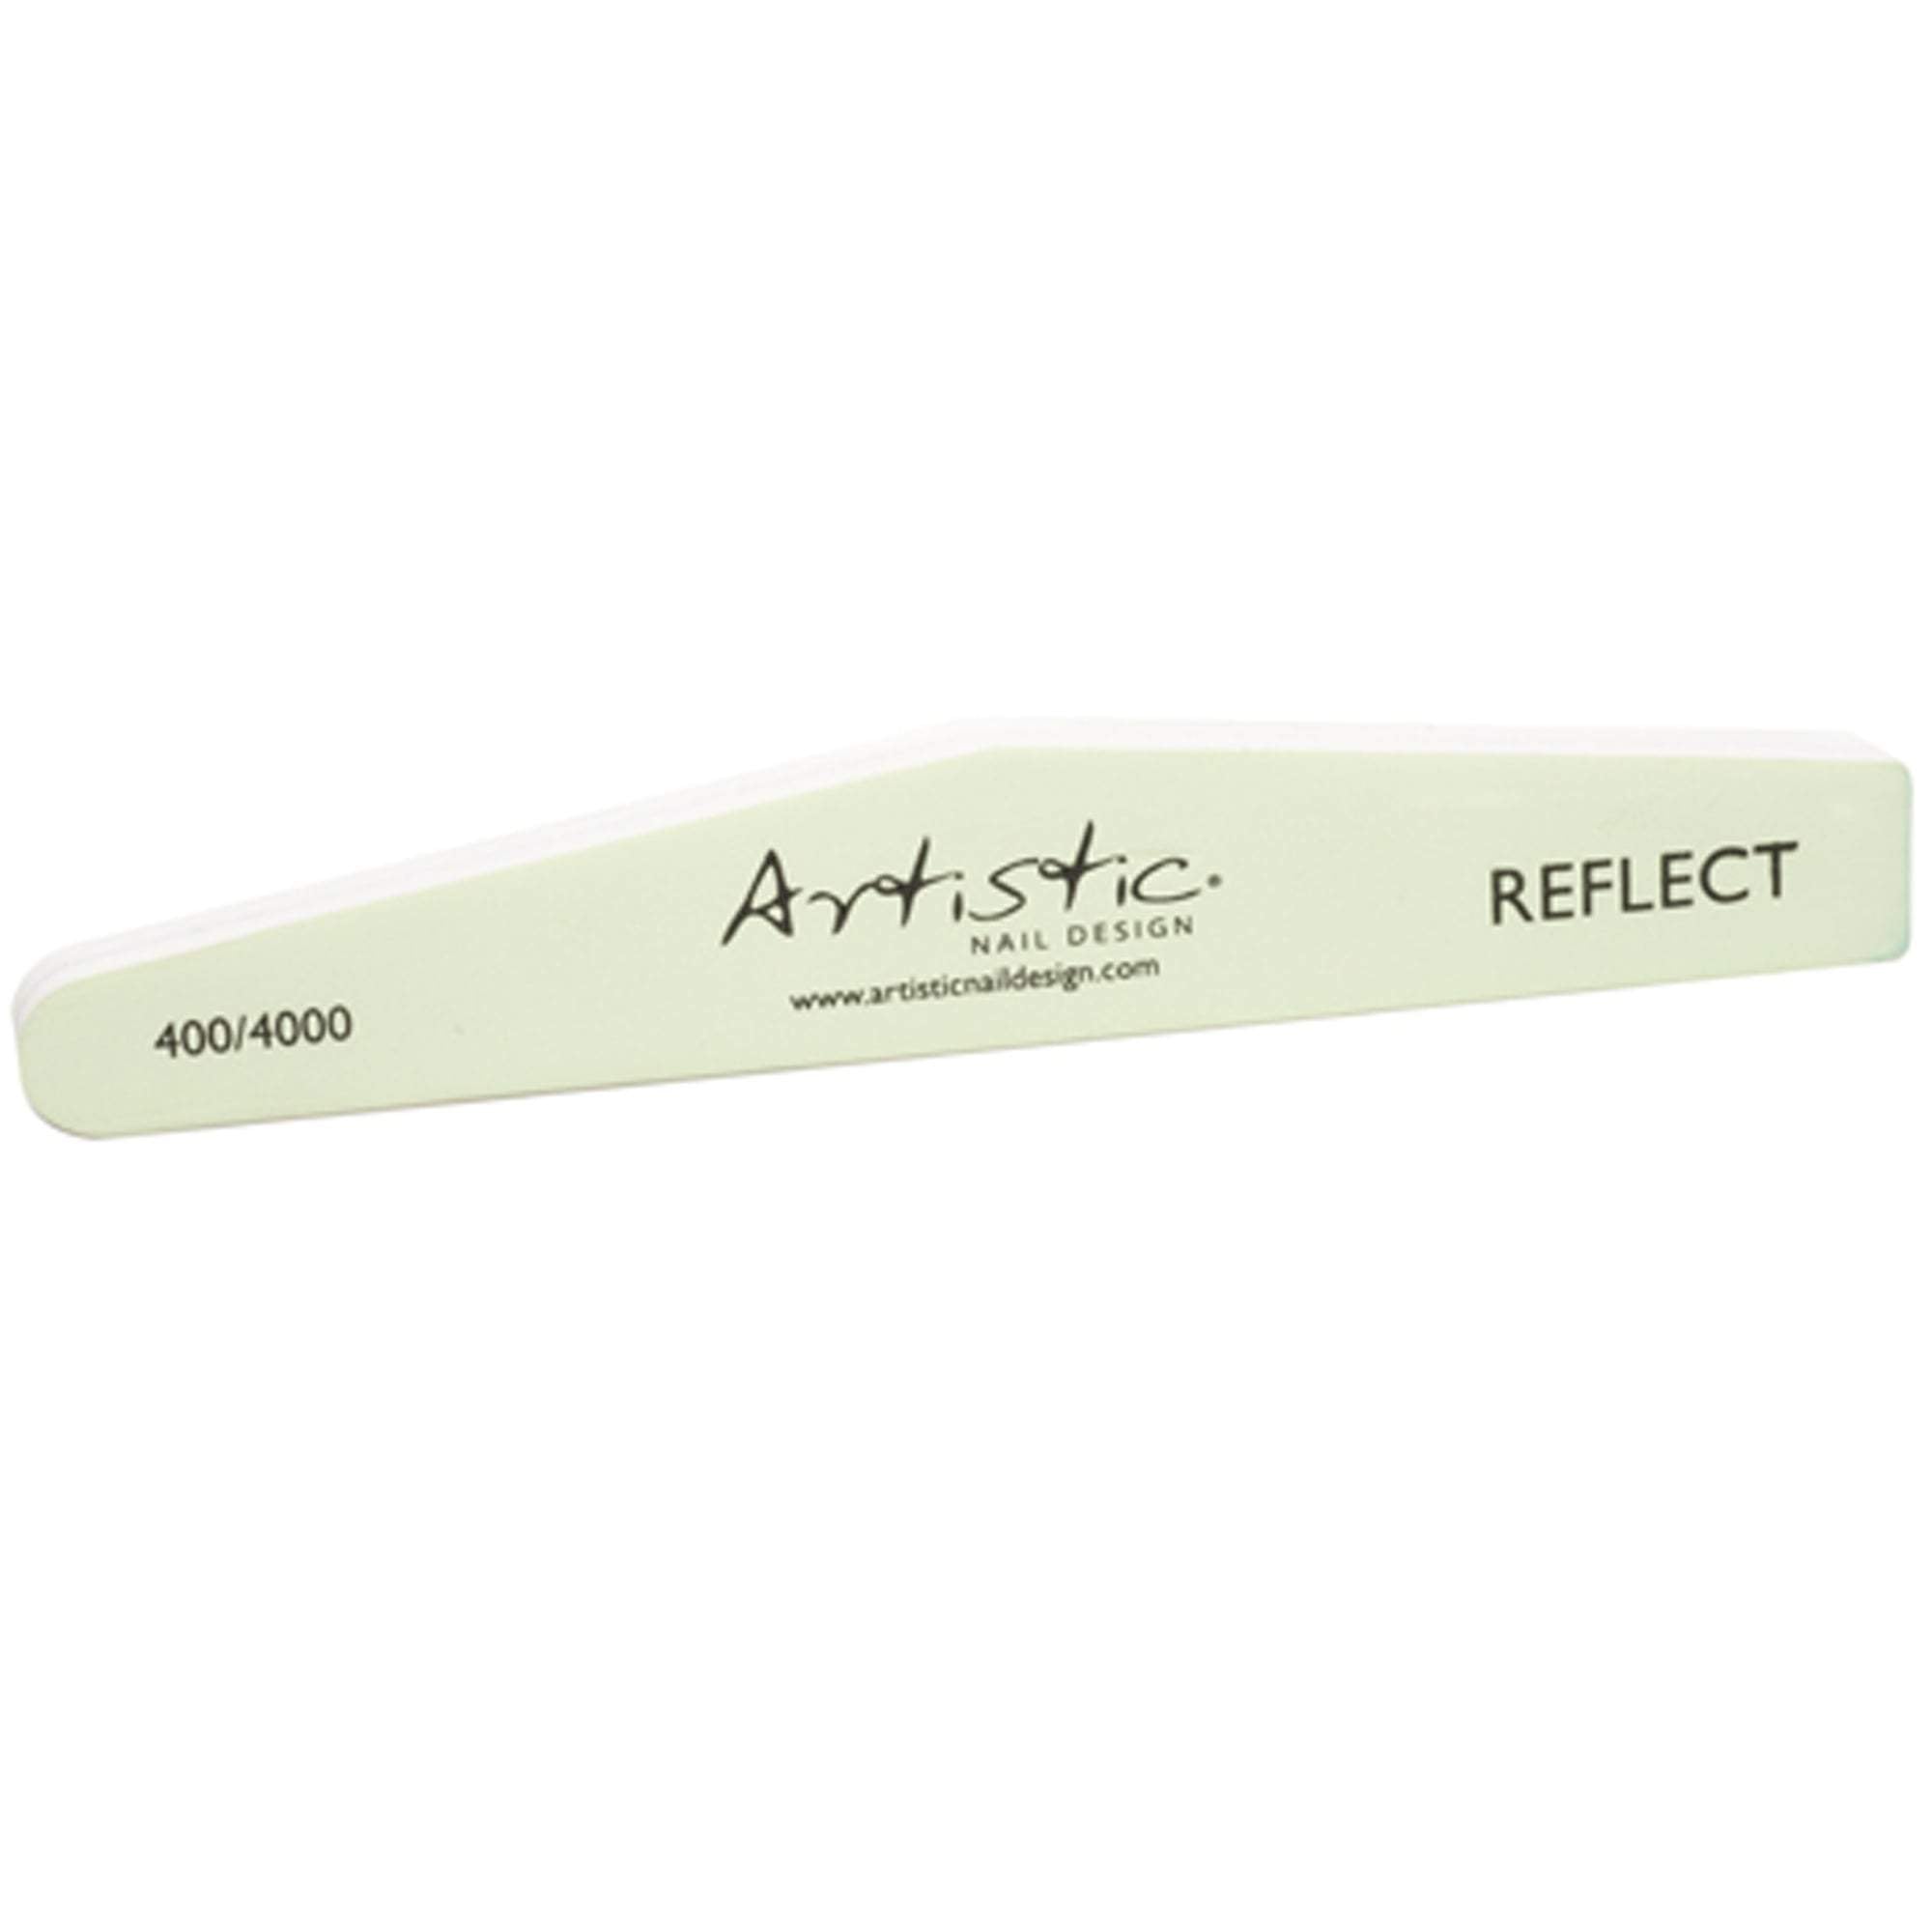 Artistic 400/4000 Design Reflect Buffer